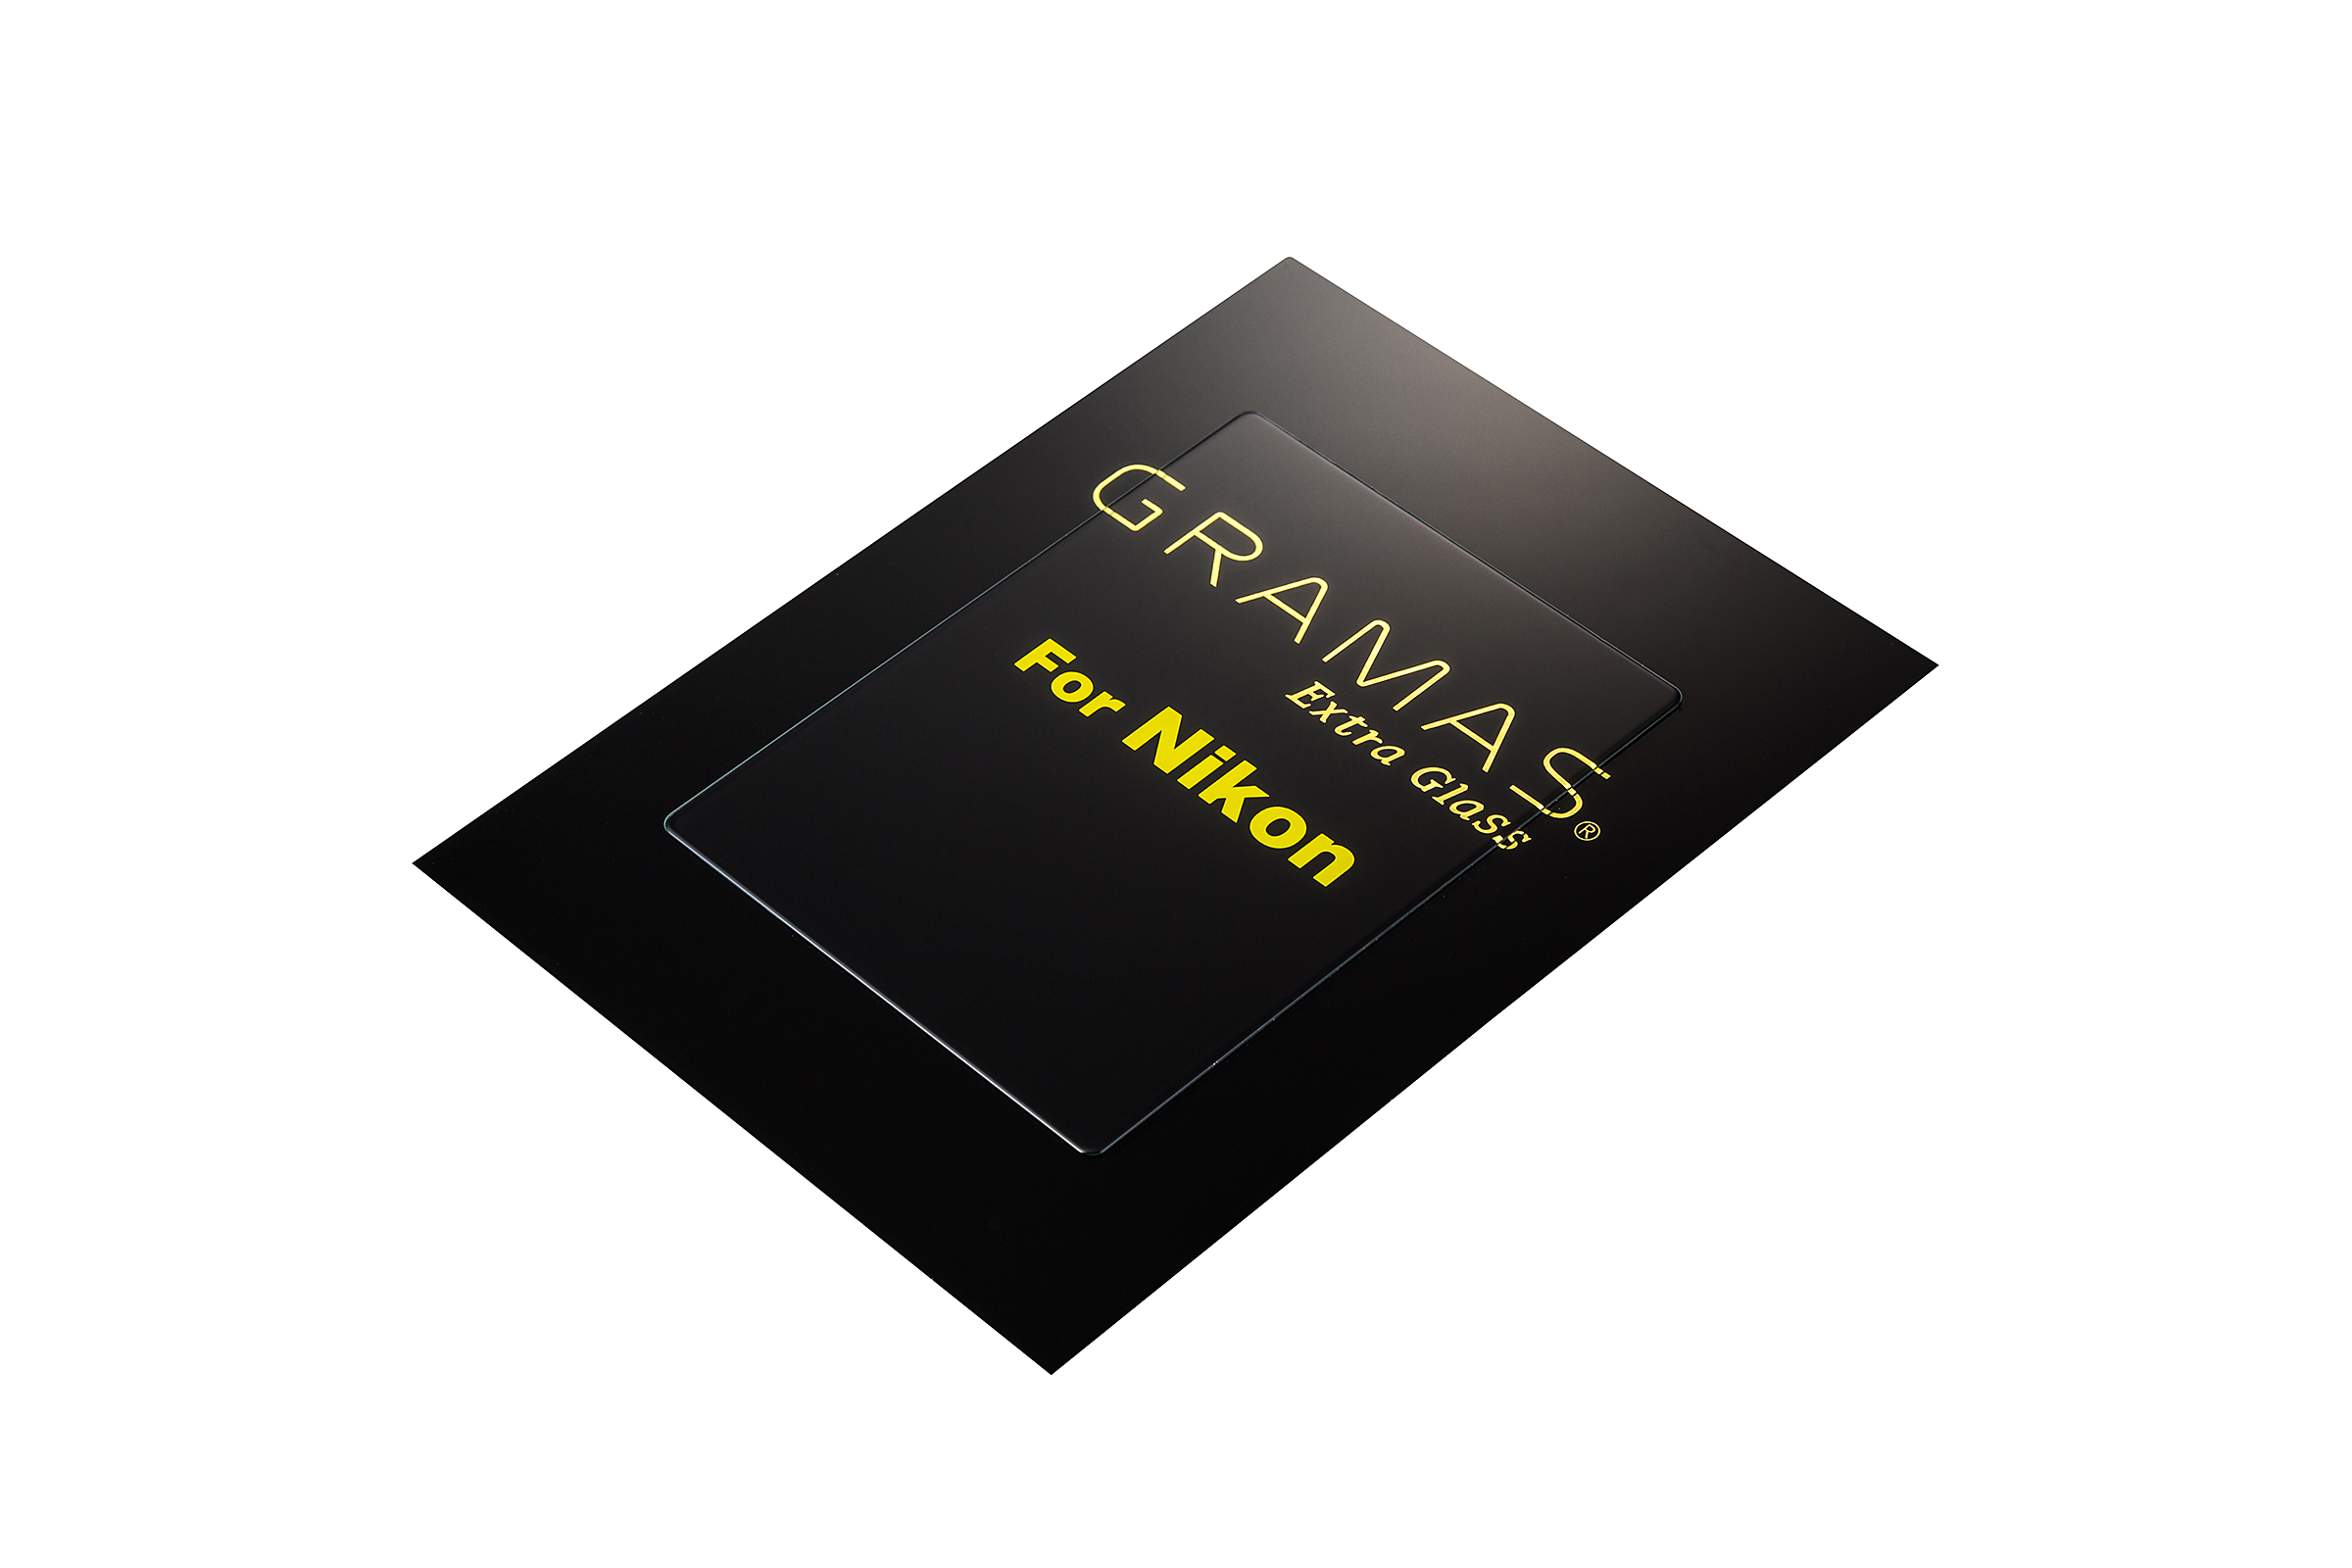 グラマス  Extra Glass DCG-NI17 [Nikon Z 9用] GRAMAS